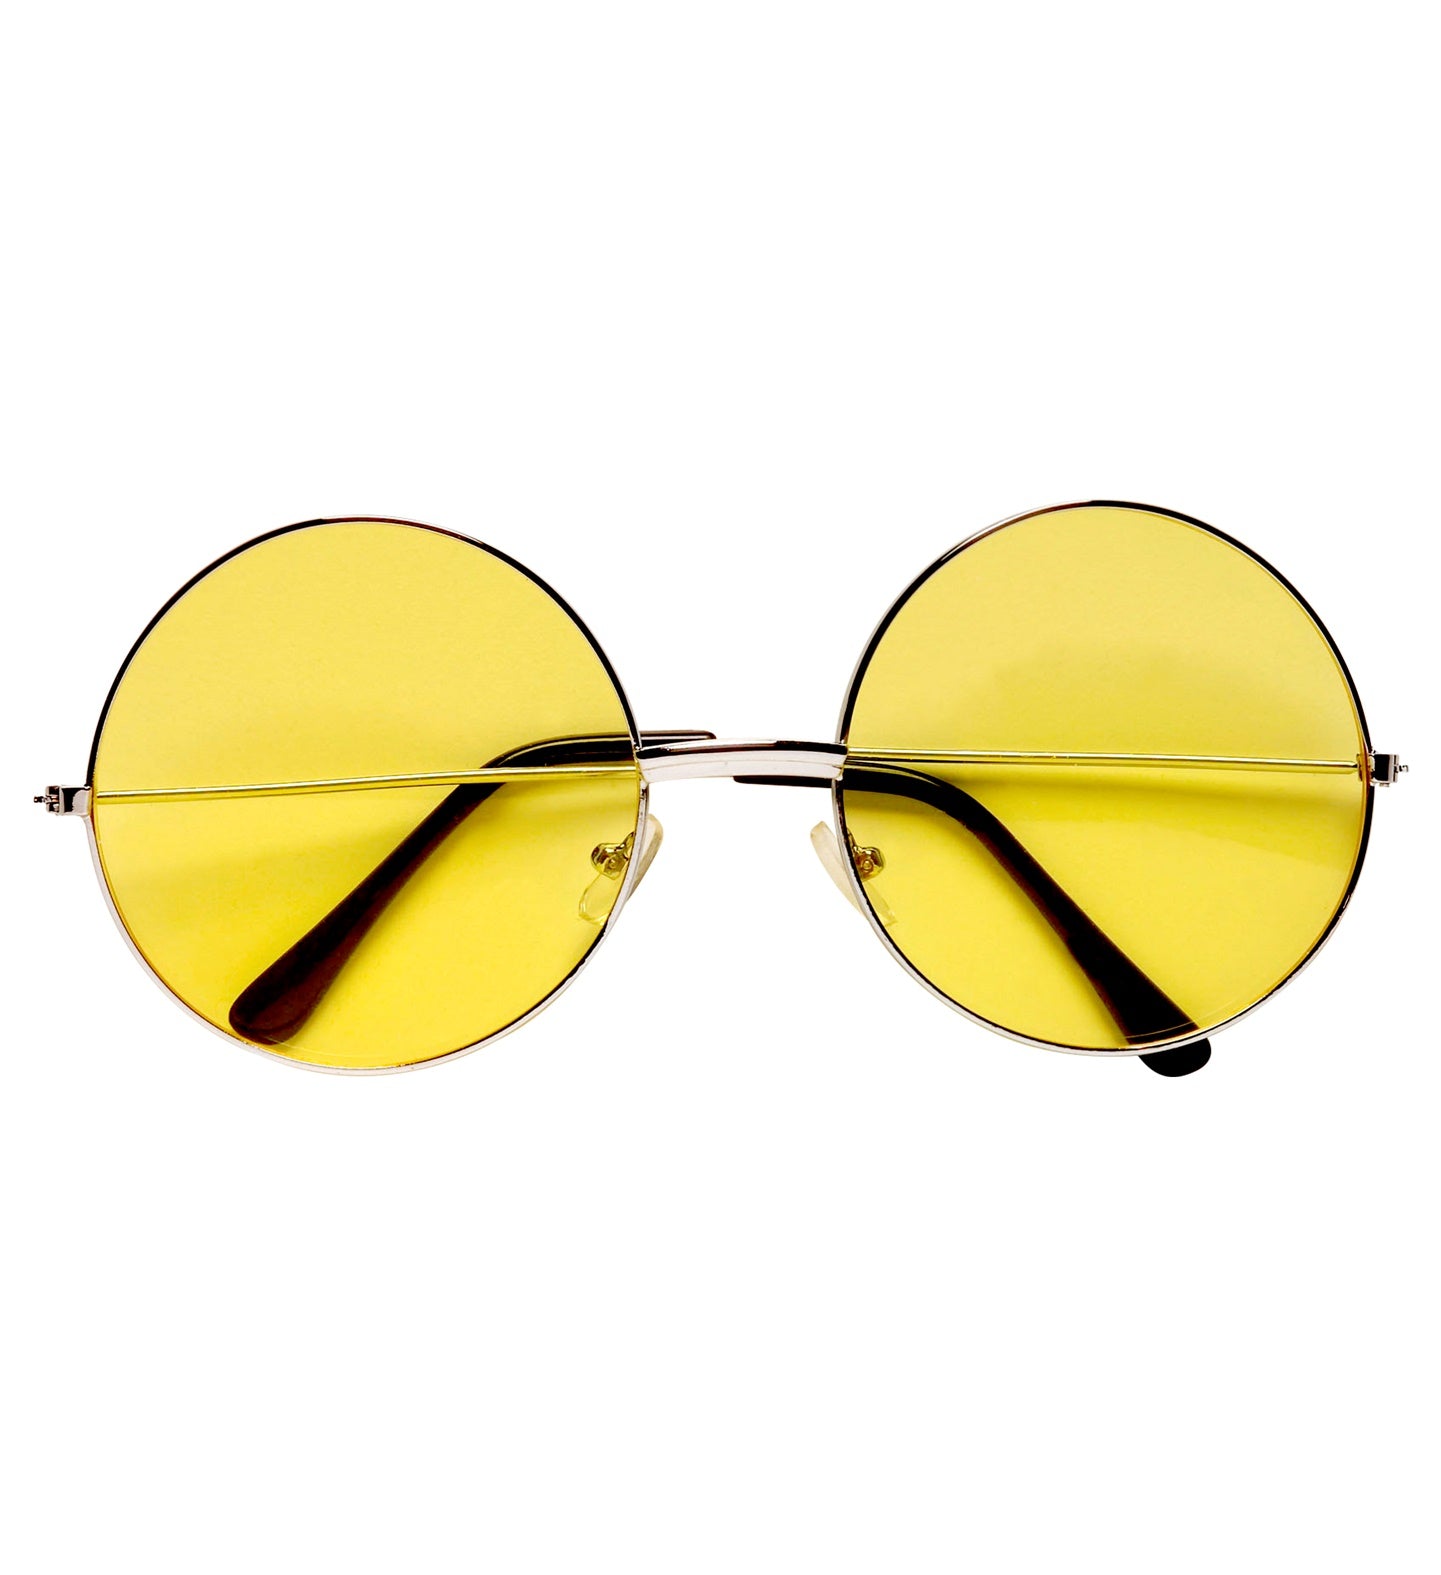 Yellow John Lennon 60's glasses or Specs